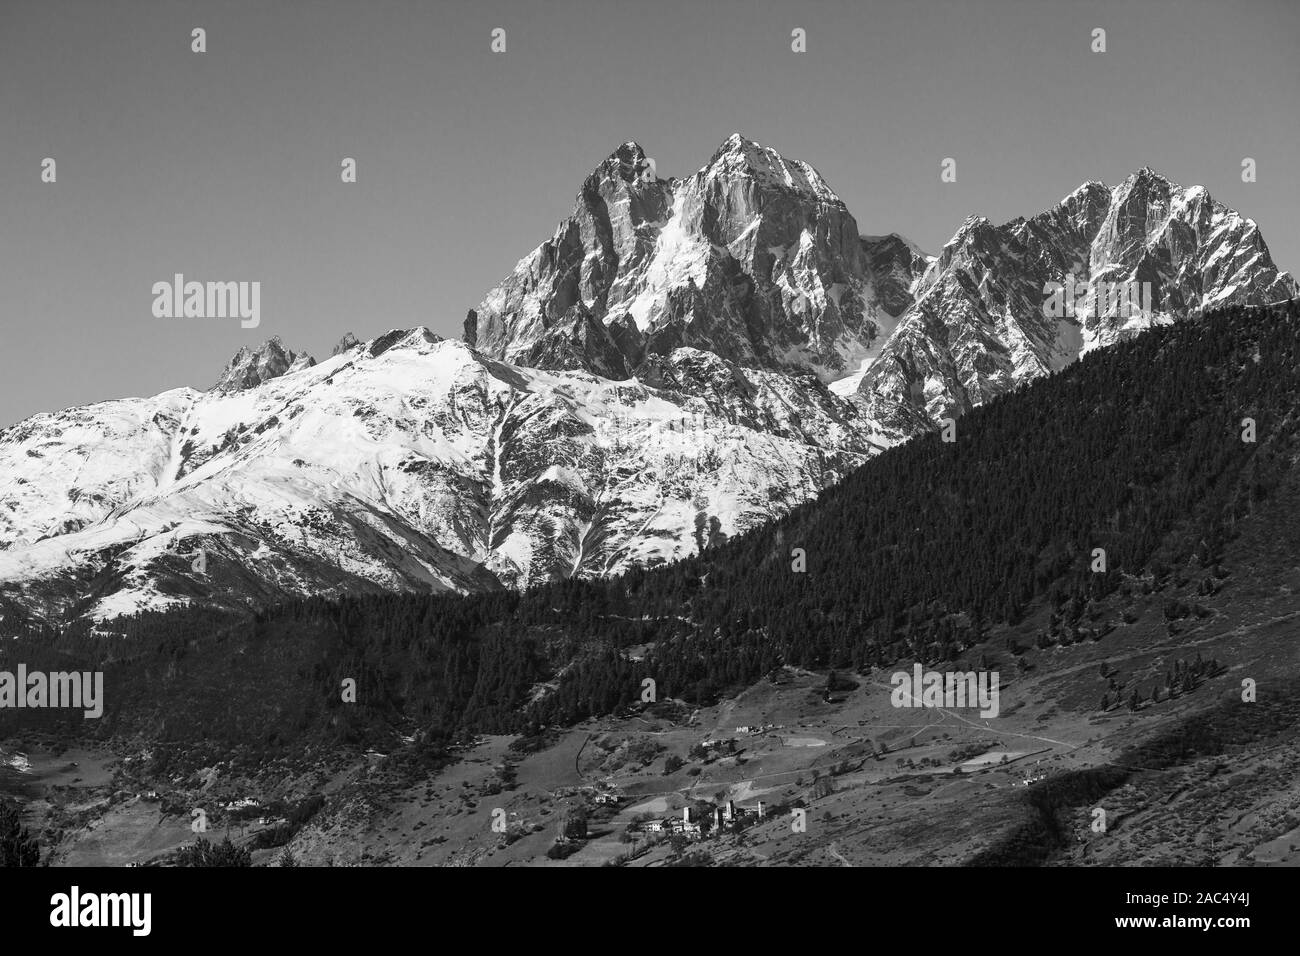 Paesaggio di montagna panorama. Maestose vette coperte di neve. Bianco e nero immagine drammatica Foto Stock